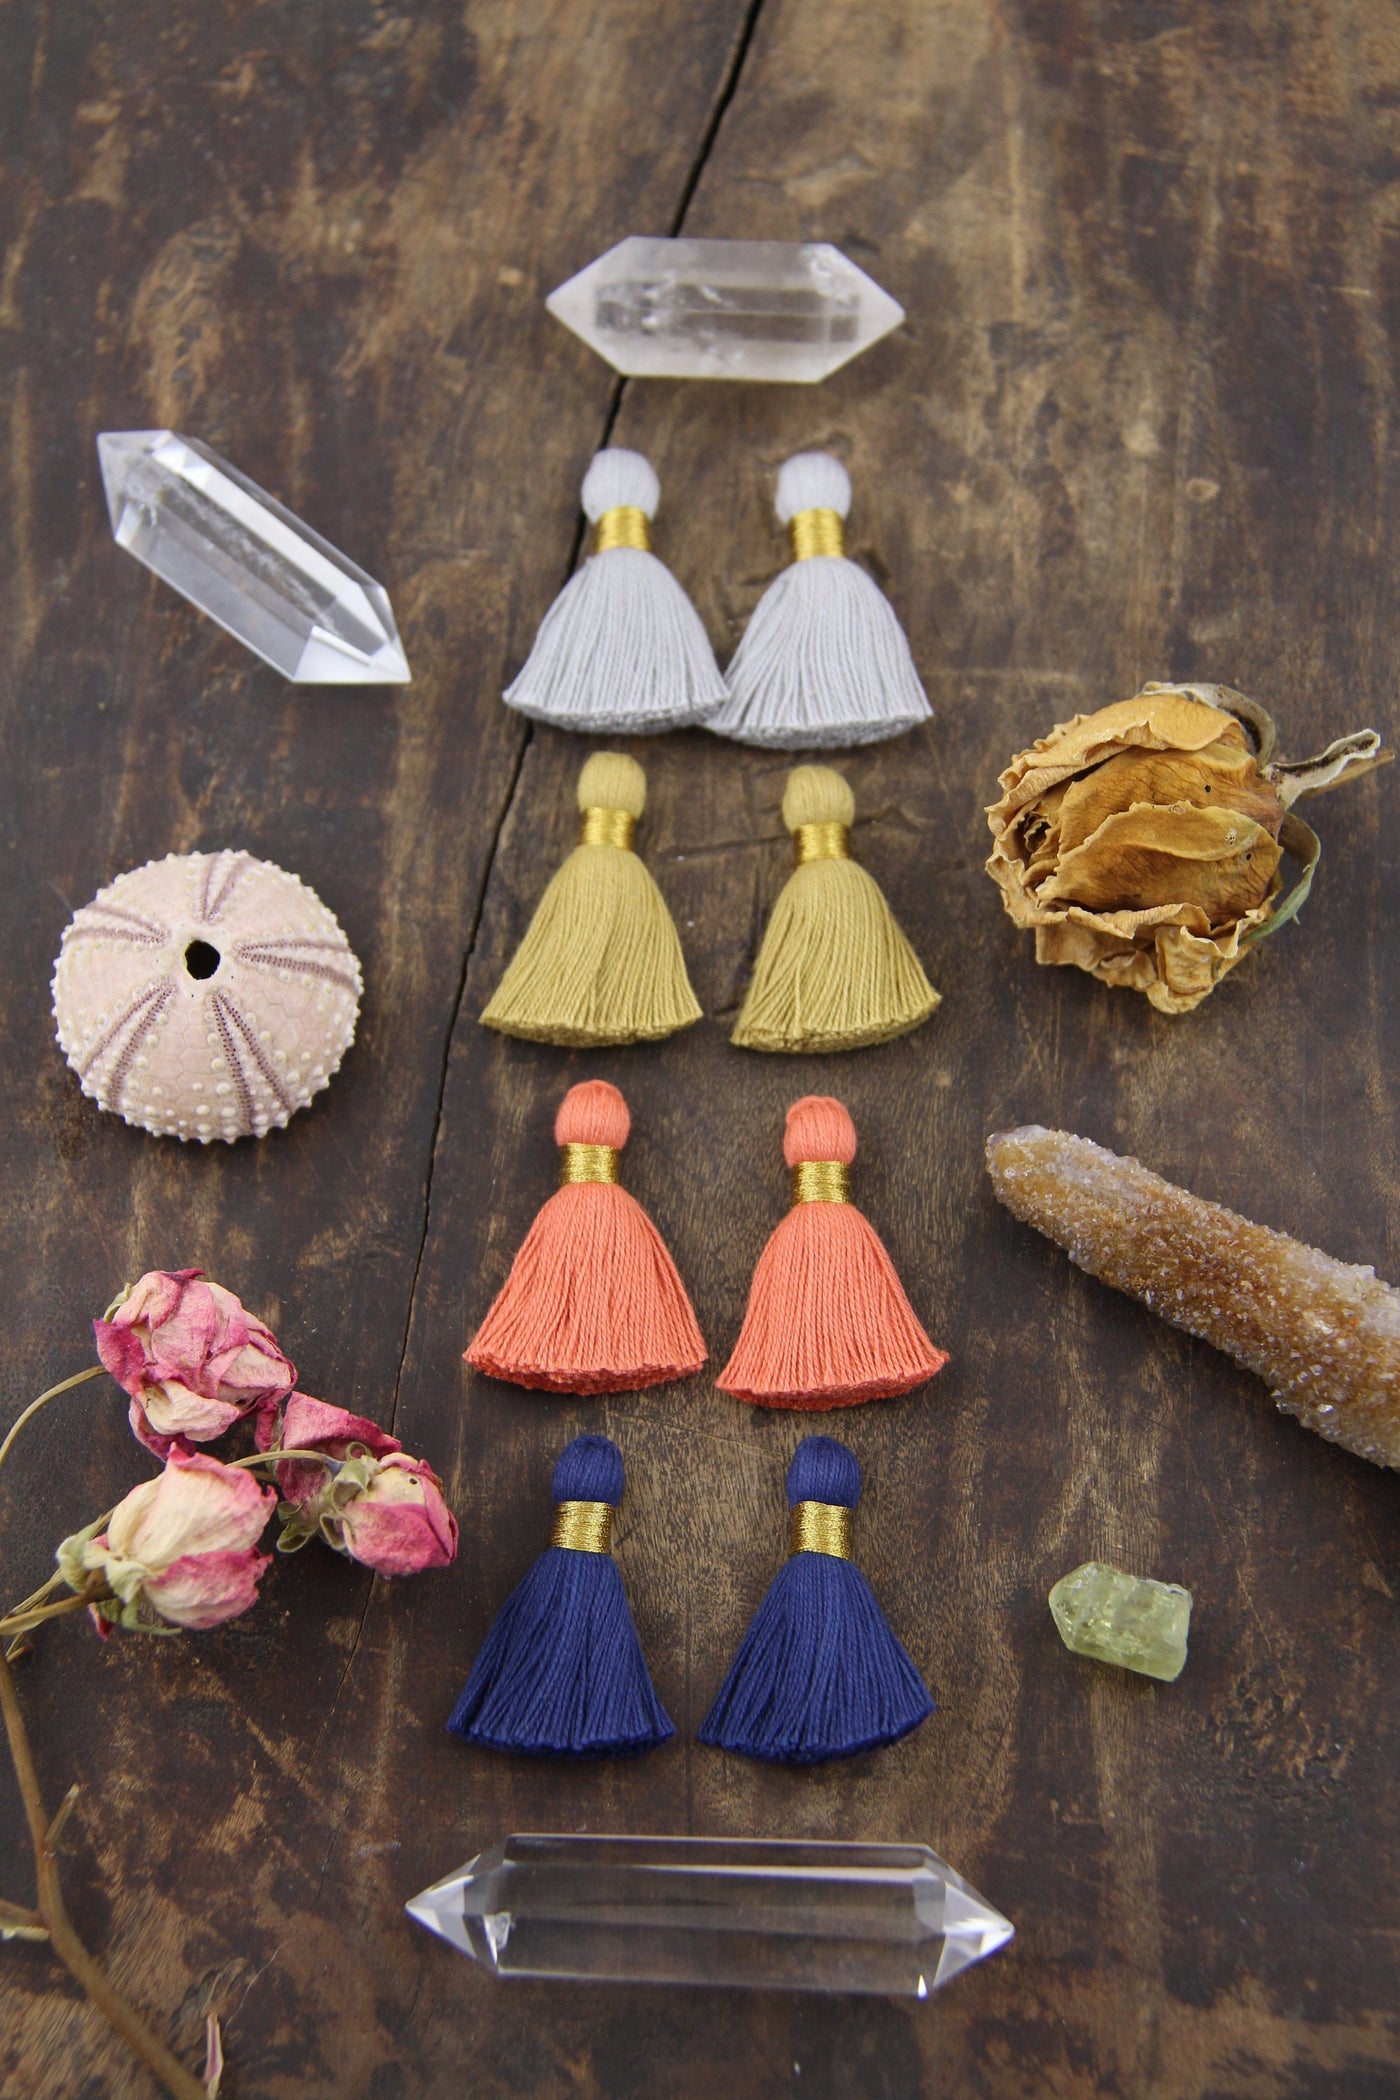 Autumn Mix 1.25" Mini Tassels: Boho Cotton Jewelry Making Supplies, 8 pcs, Grey, Orange, Blue, Tan